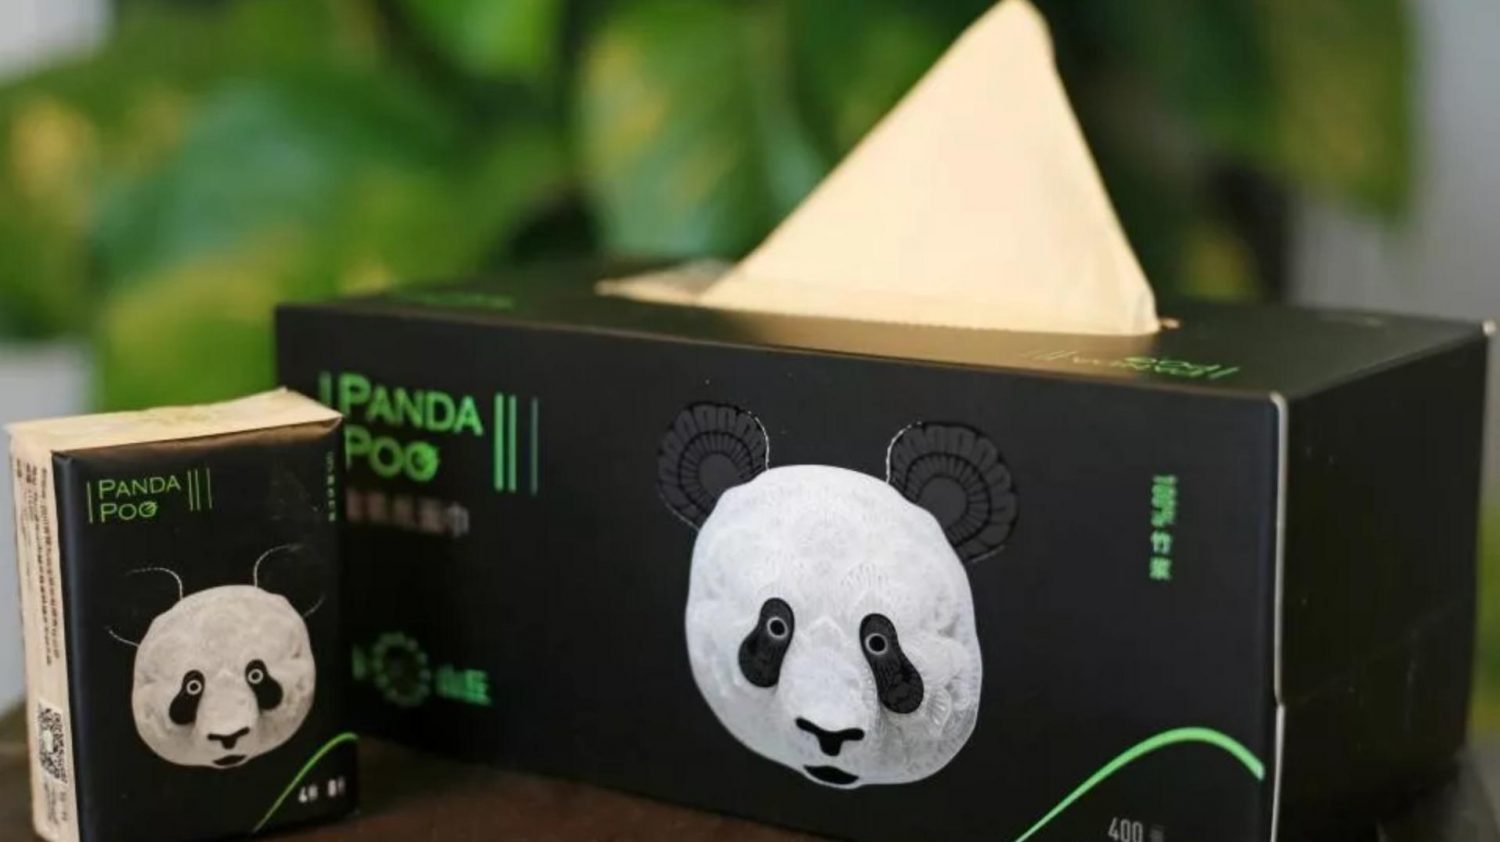 panda poo paper (bamboo paper)